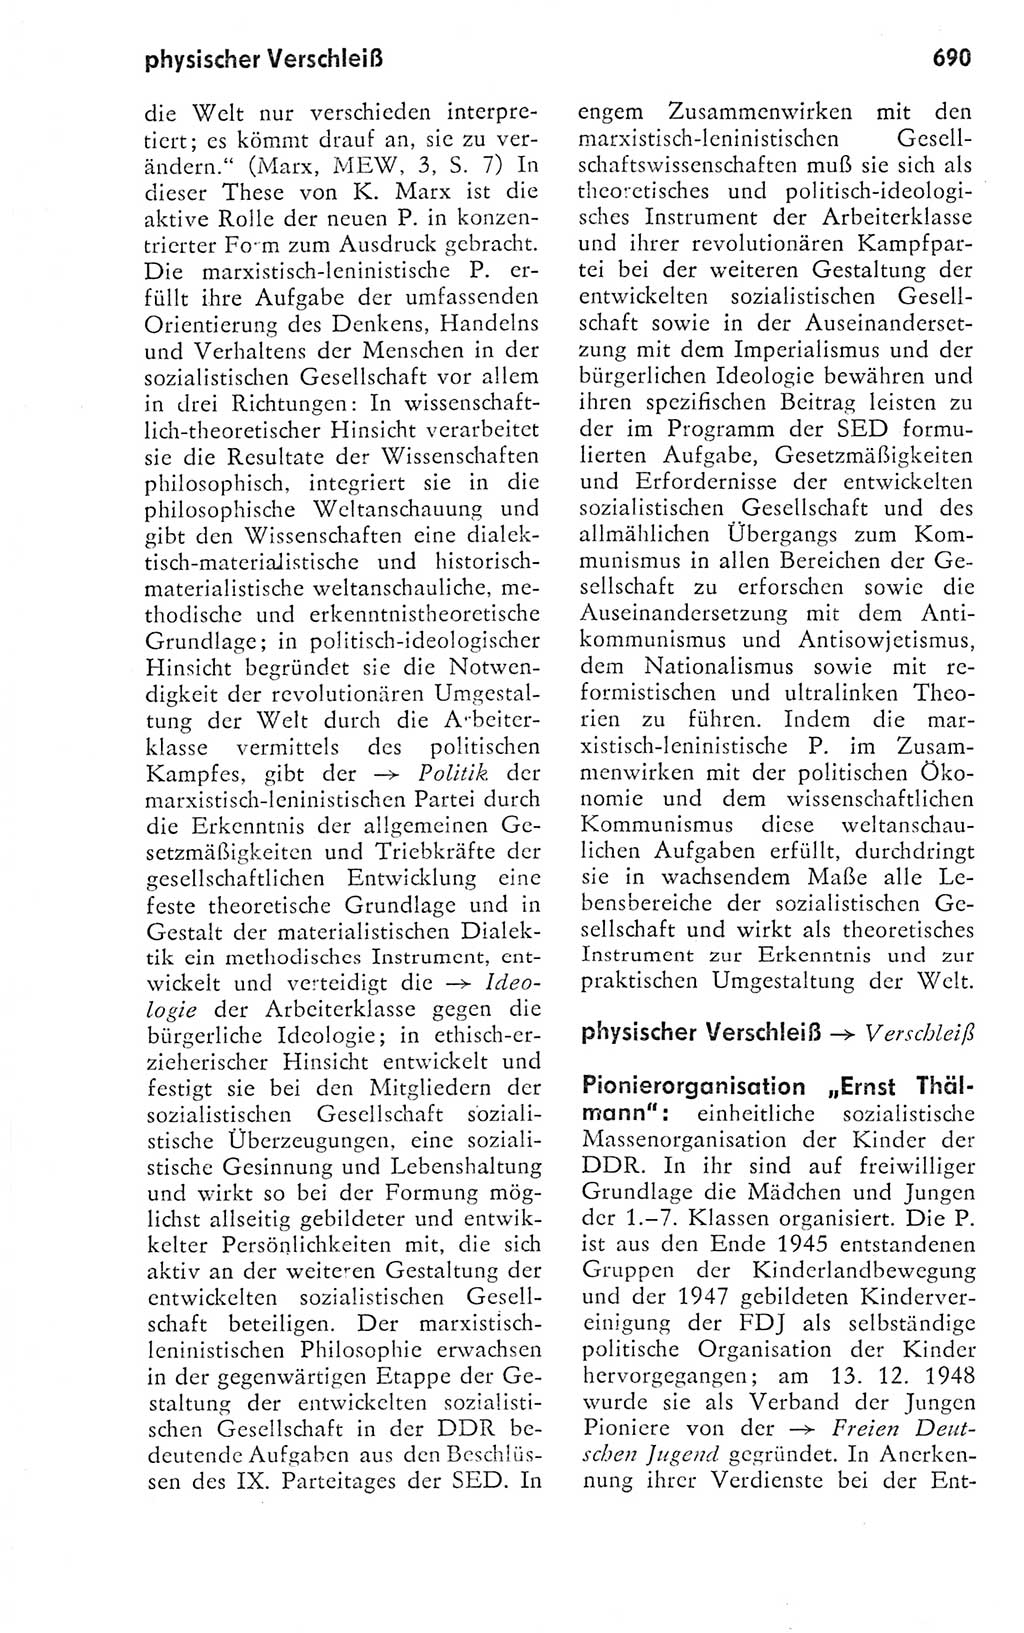 Kleines politisches Wörterbuch [Deutsche Demokratische Republik (DDR)] 1978, Seite 690 (Kl. pol. Wb. DDR 1978, S. 690)